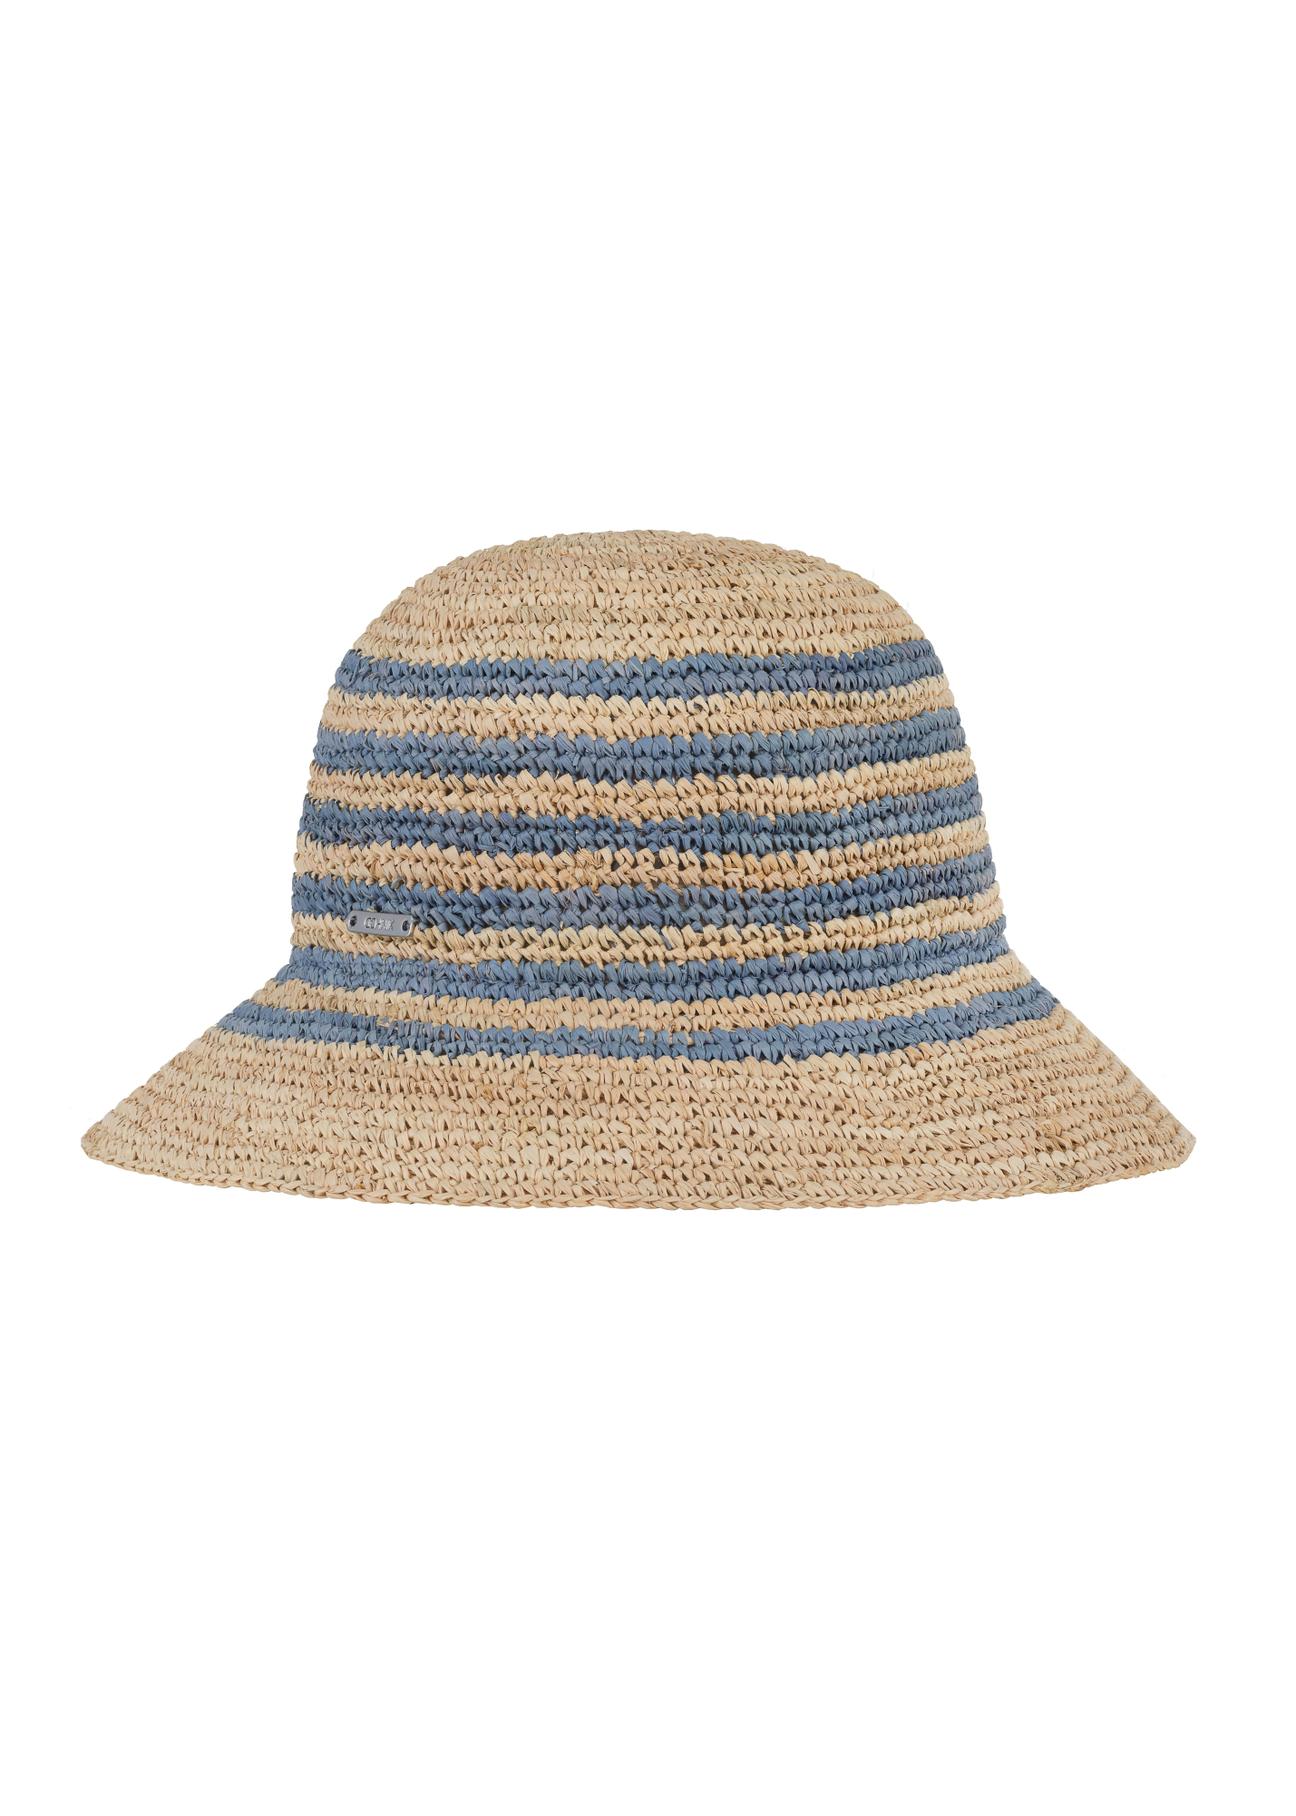 Słomkowy kapelusz damski w niebieskie paski KAPDT-0036-25(W24)